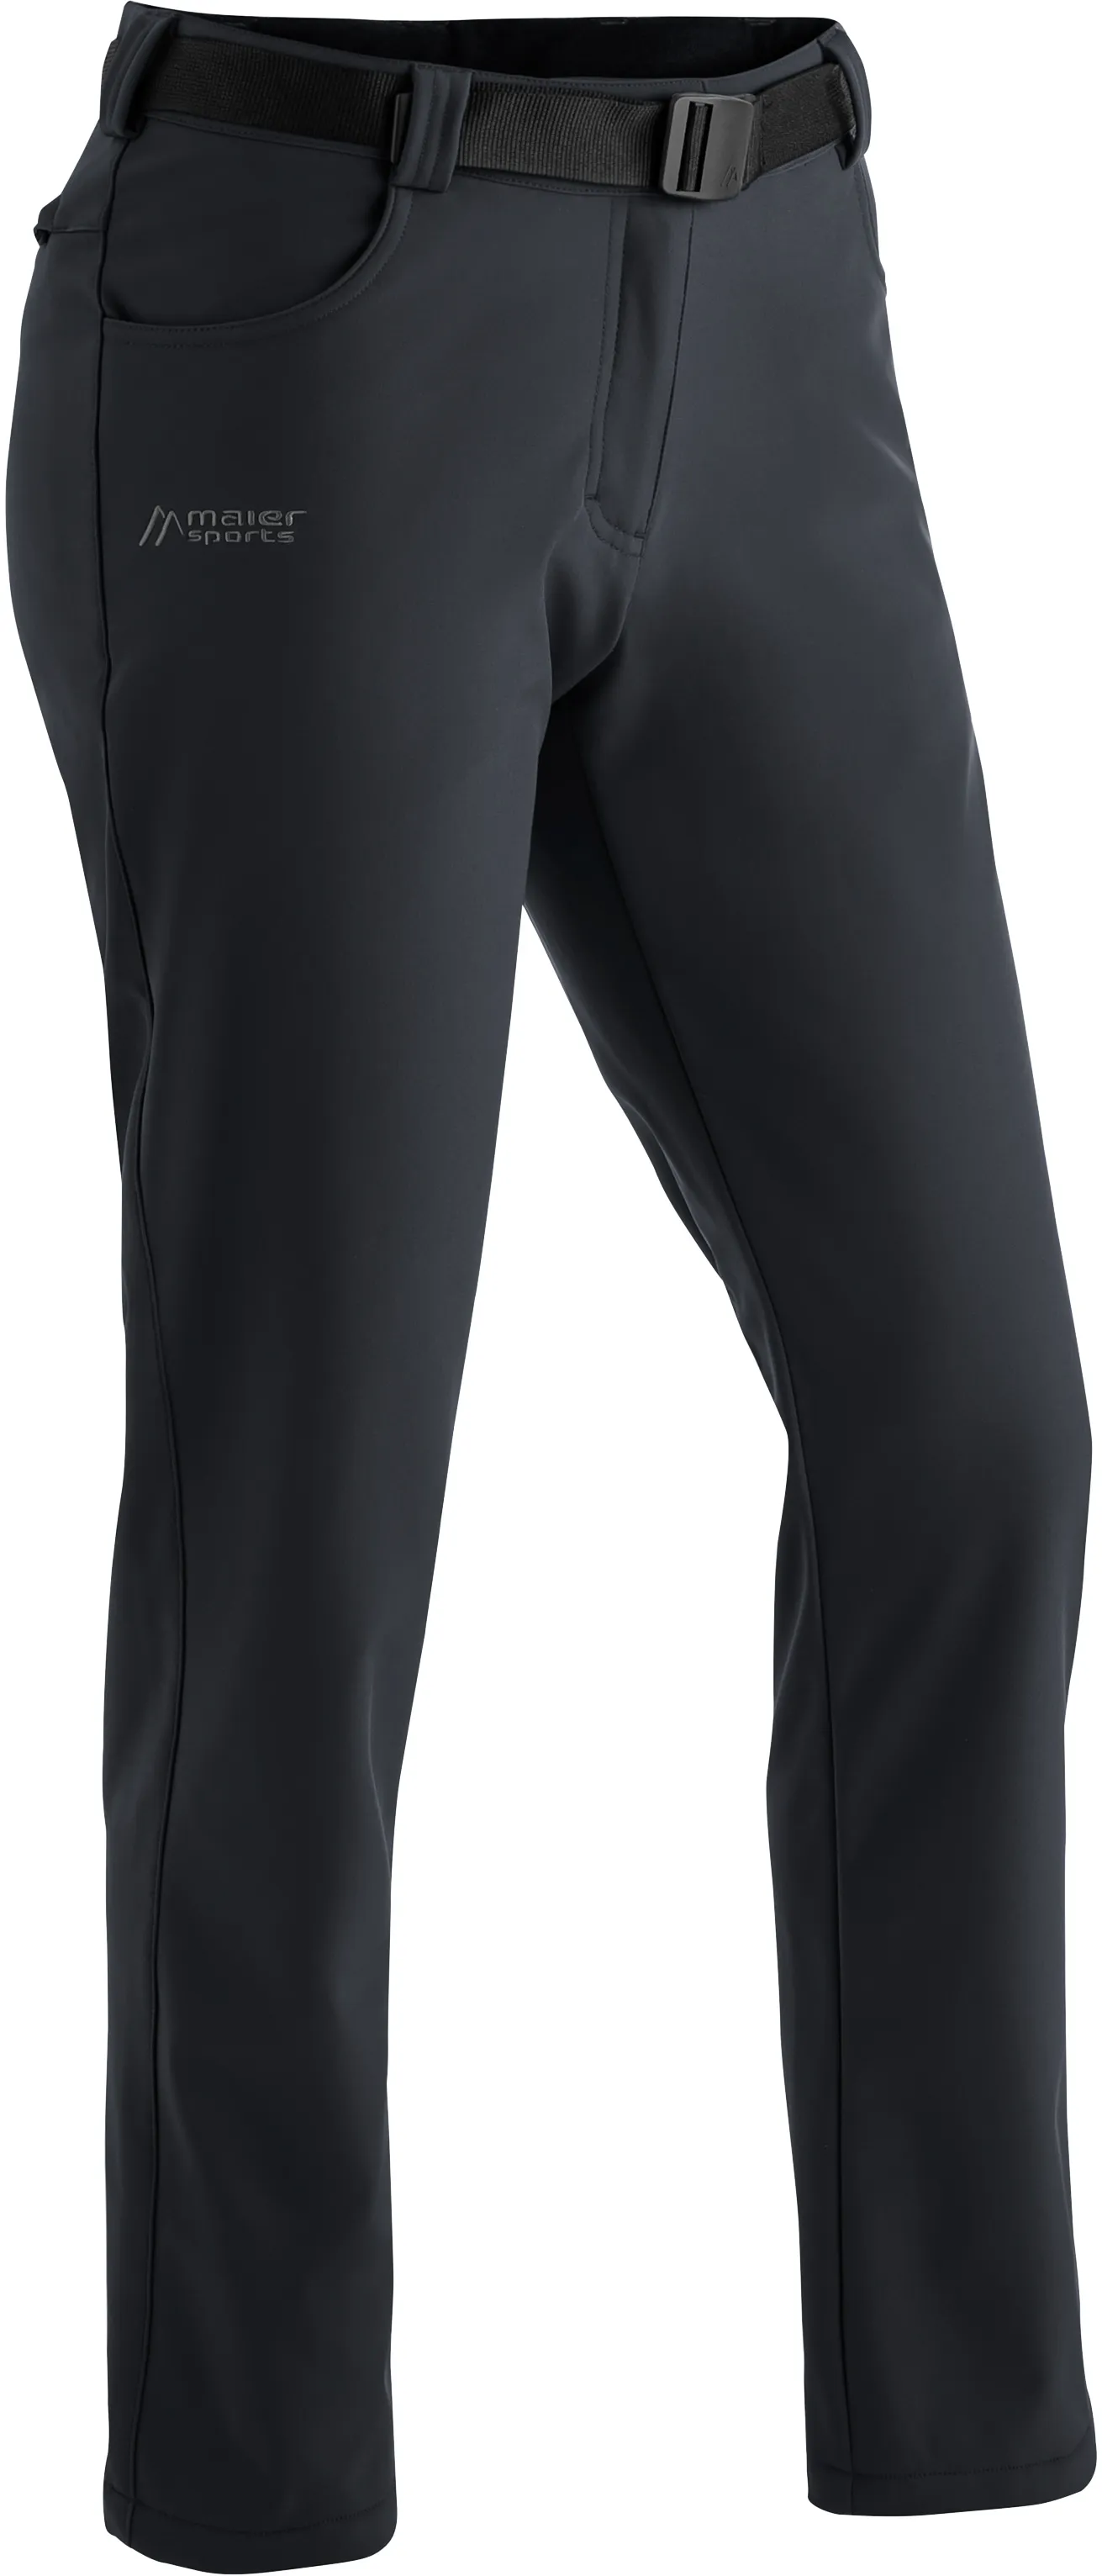 Funktionshose MAIER SPORTS "Perlit W" Gr. 25, Kurzgrößen, schwarz Damen Hosen Funktionshosen Warme, robuste Softshellhose, elastisch